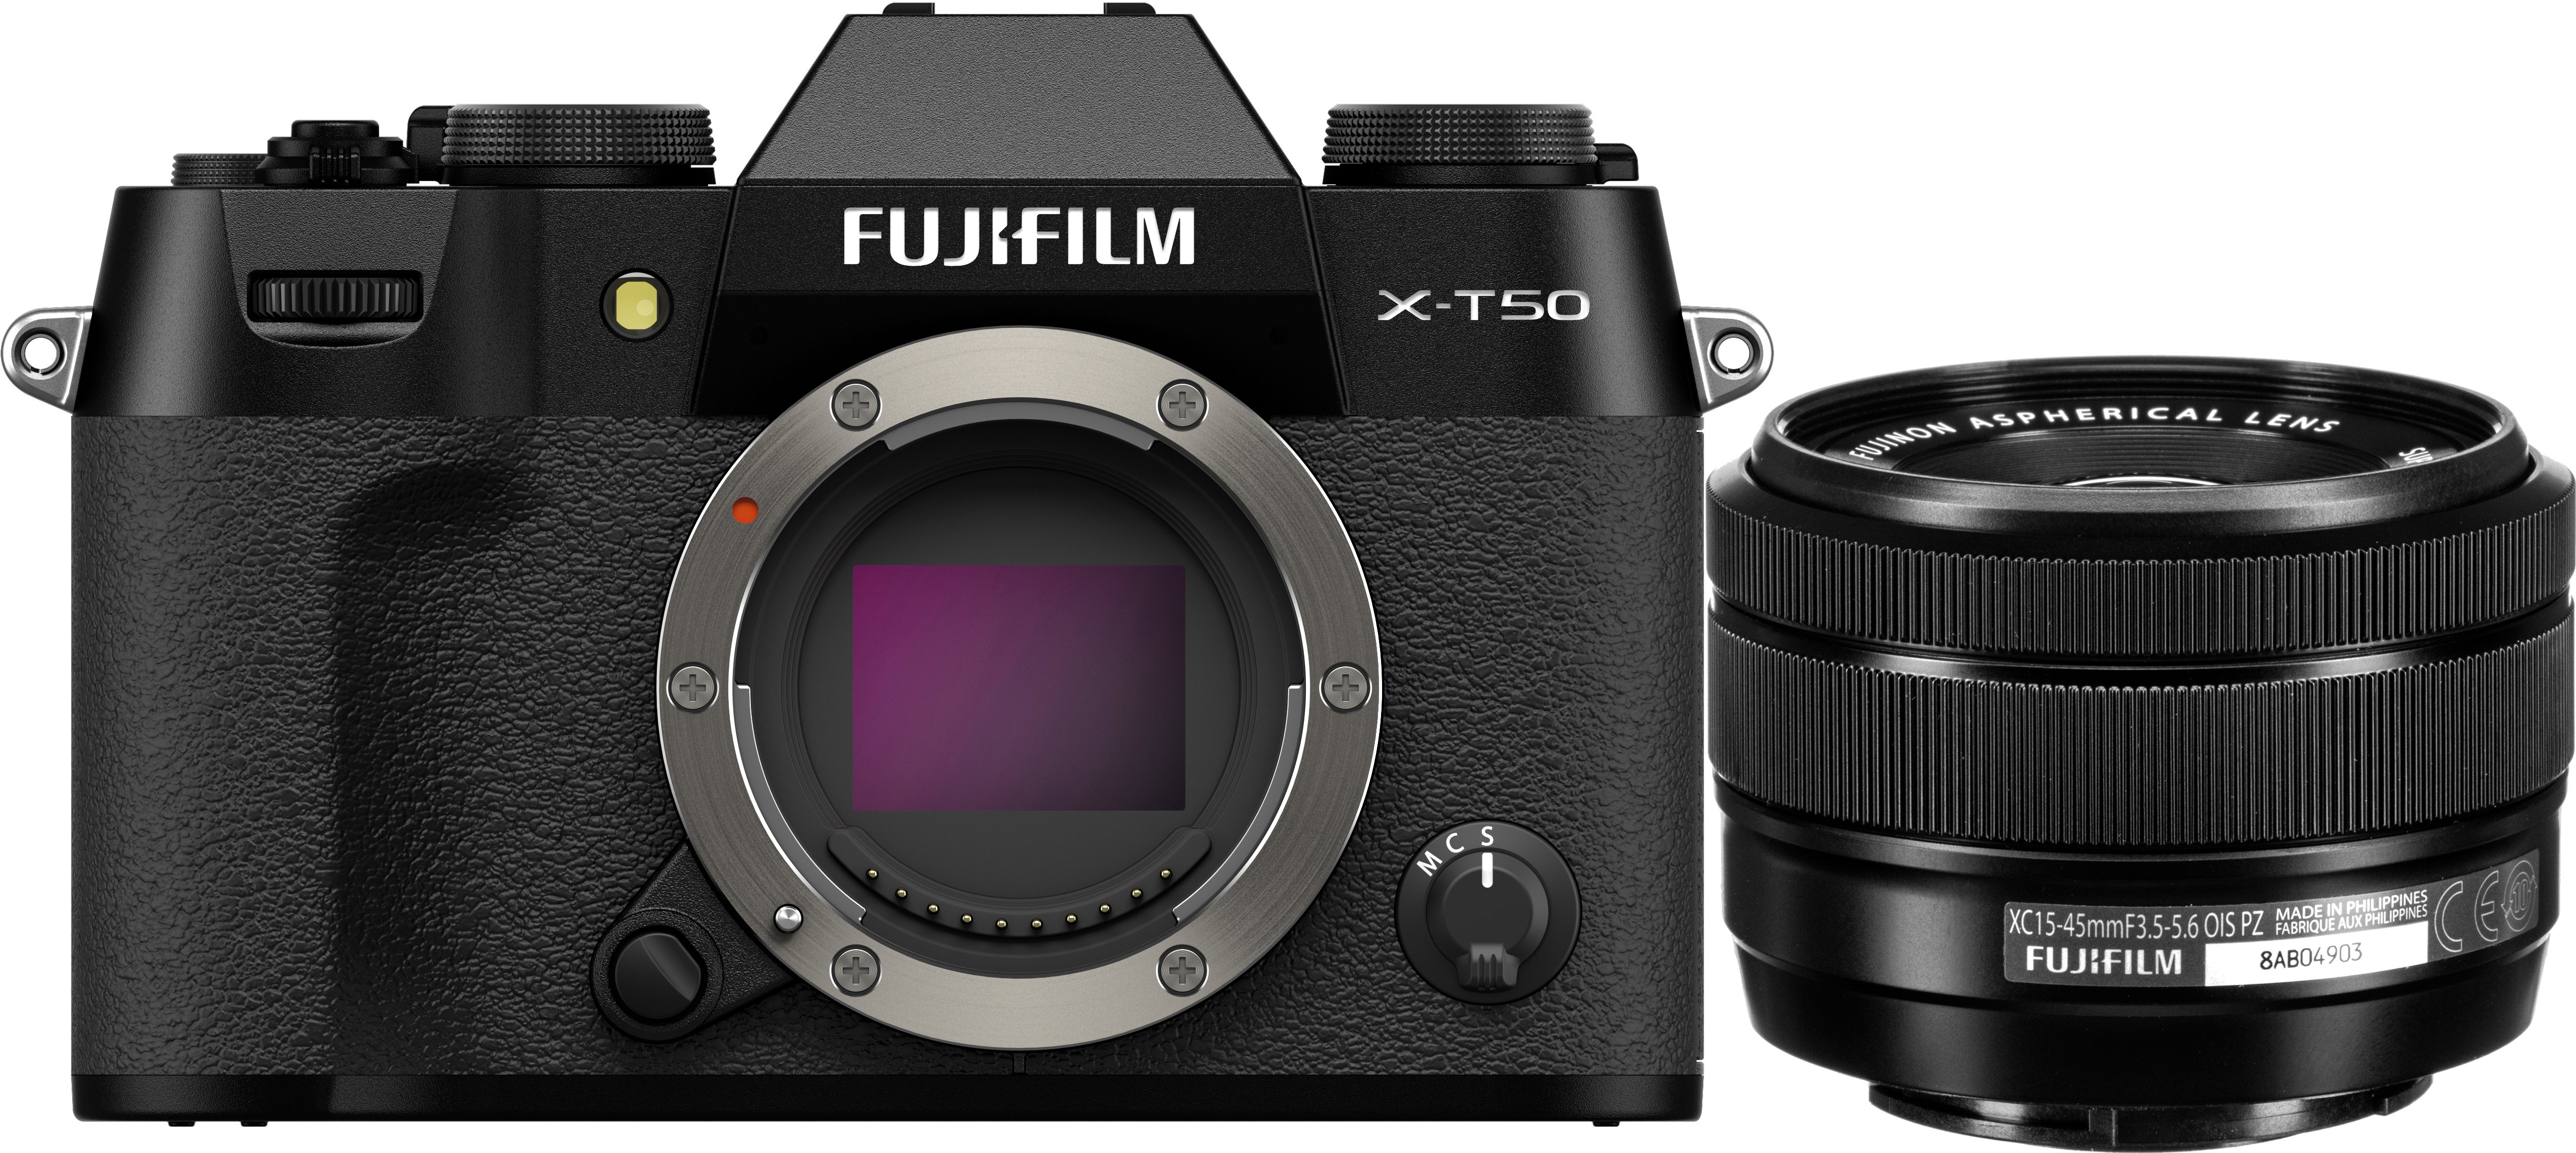 Fujifilm X-T50 Mirrorless Digital Camera with XC 15-45mm F3.5-5.6 OIS PZ  Lens